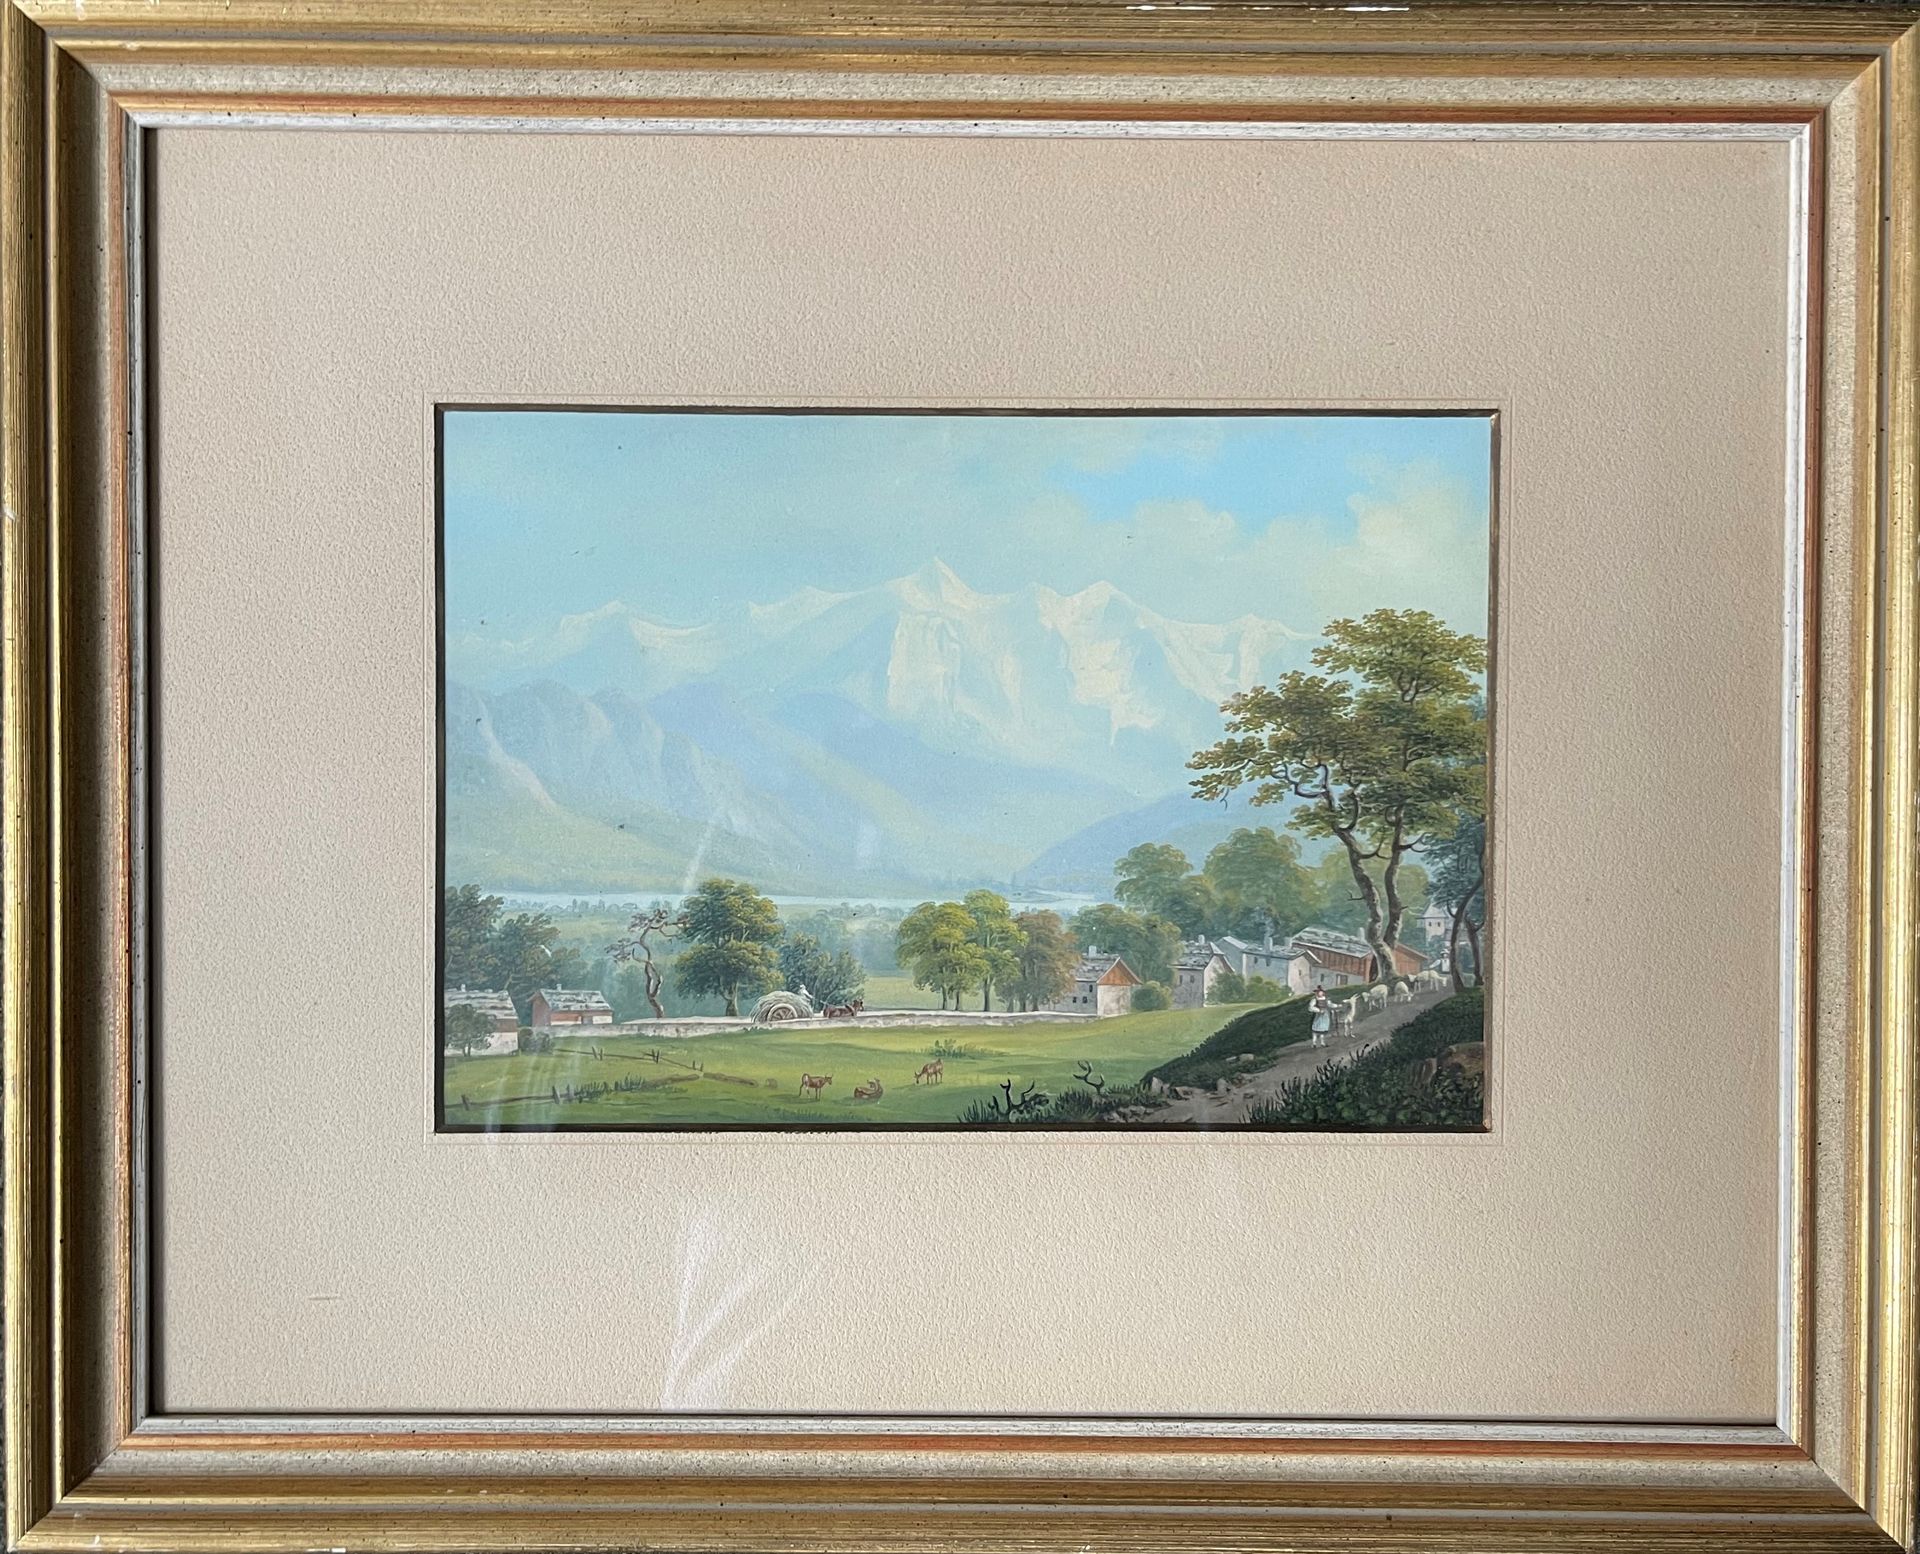 Null 约翰-路德维希-布勒尔 (1792-1850)

从Sallanches出发的勃朗峰

水粉画。

20 x 29 cm 正在观看。